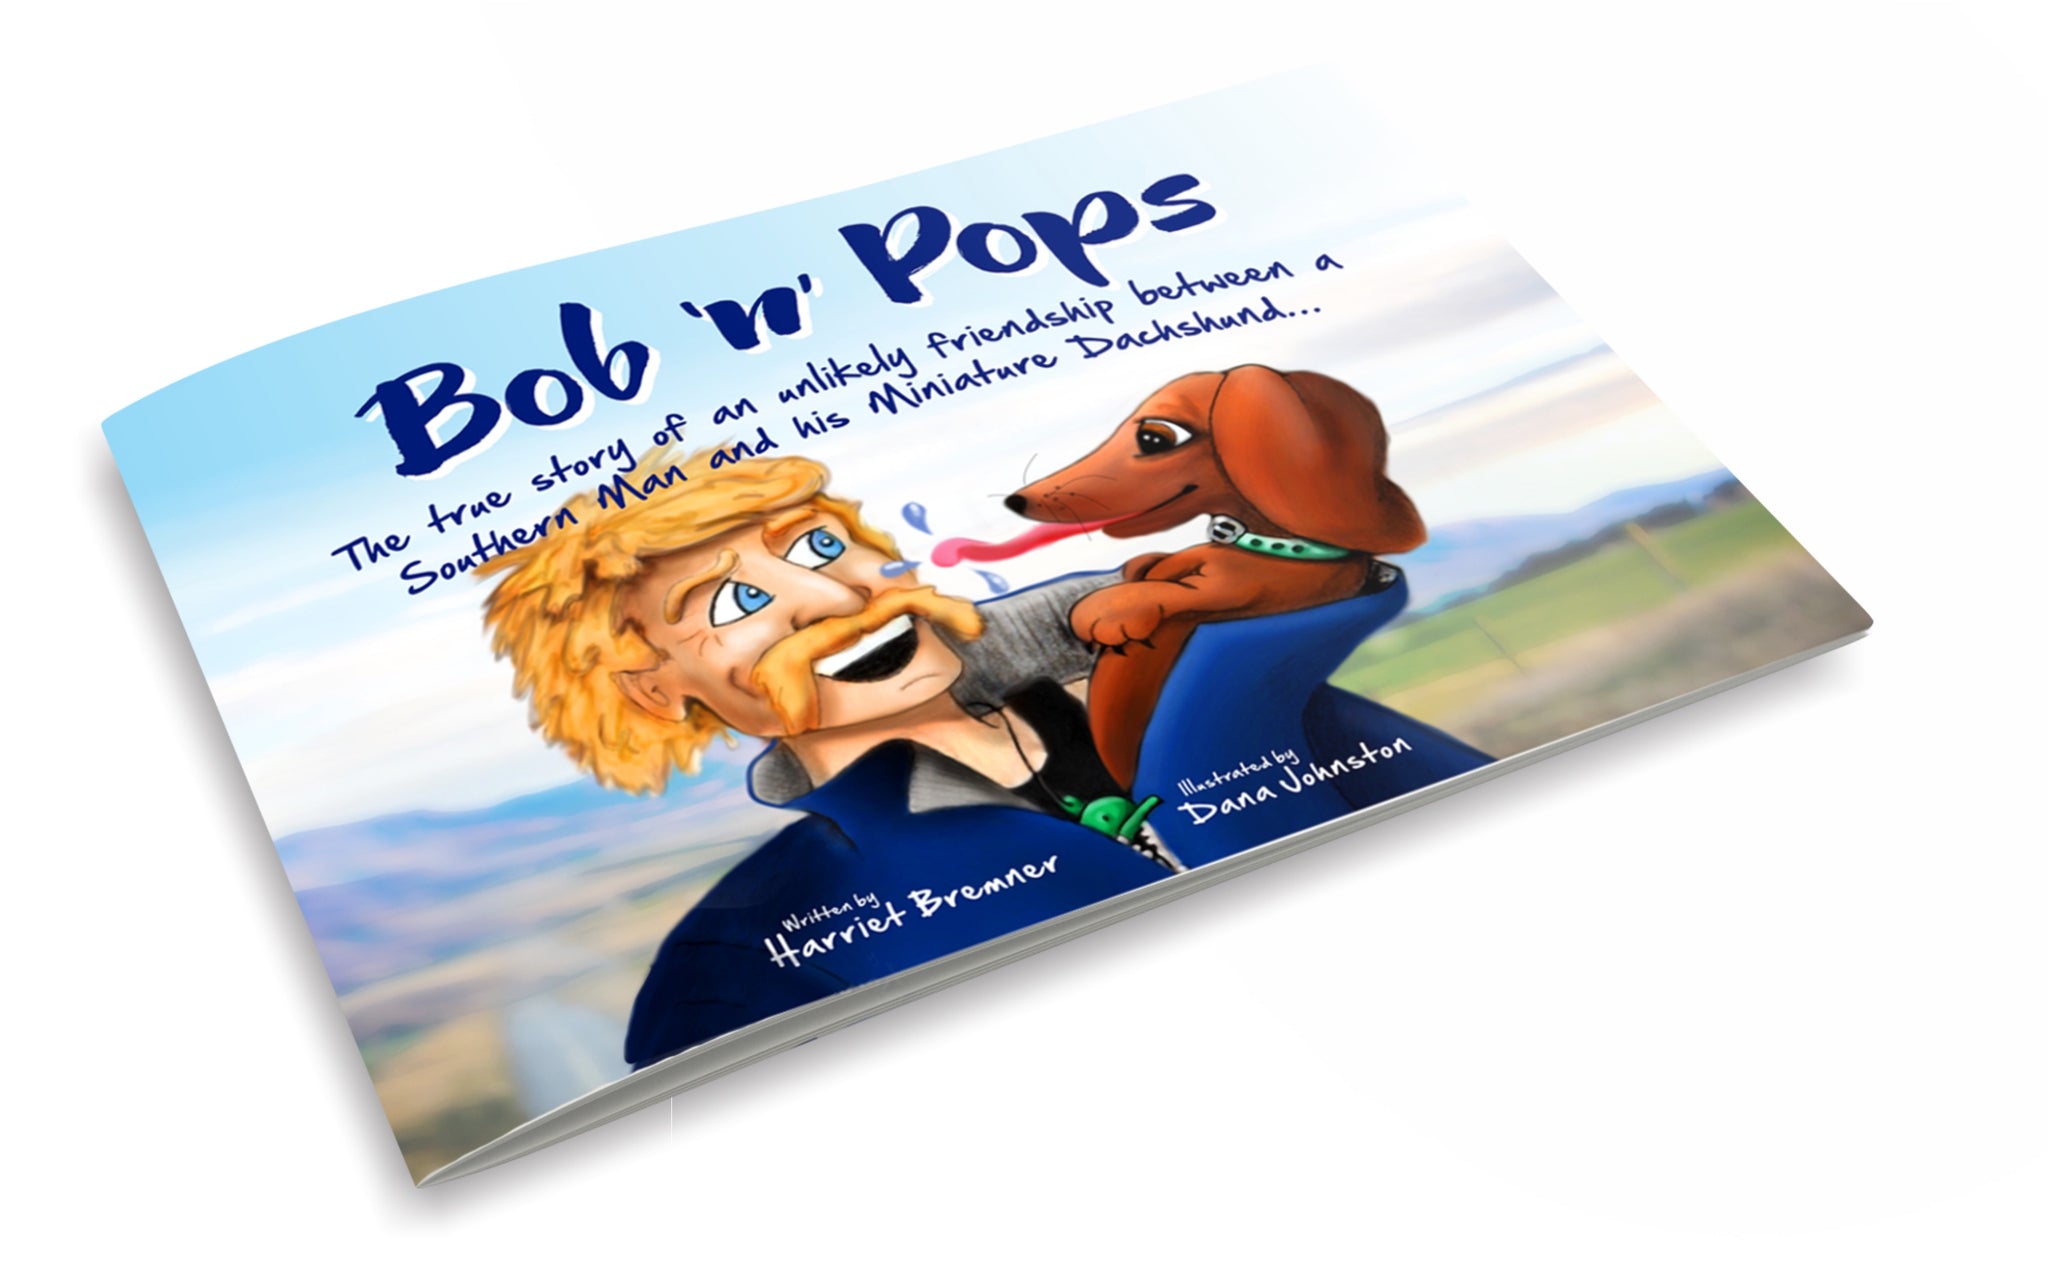 BOB ‘N’ POPS: Memorial Book